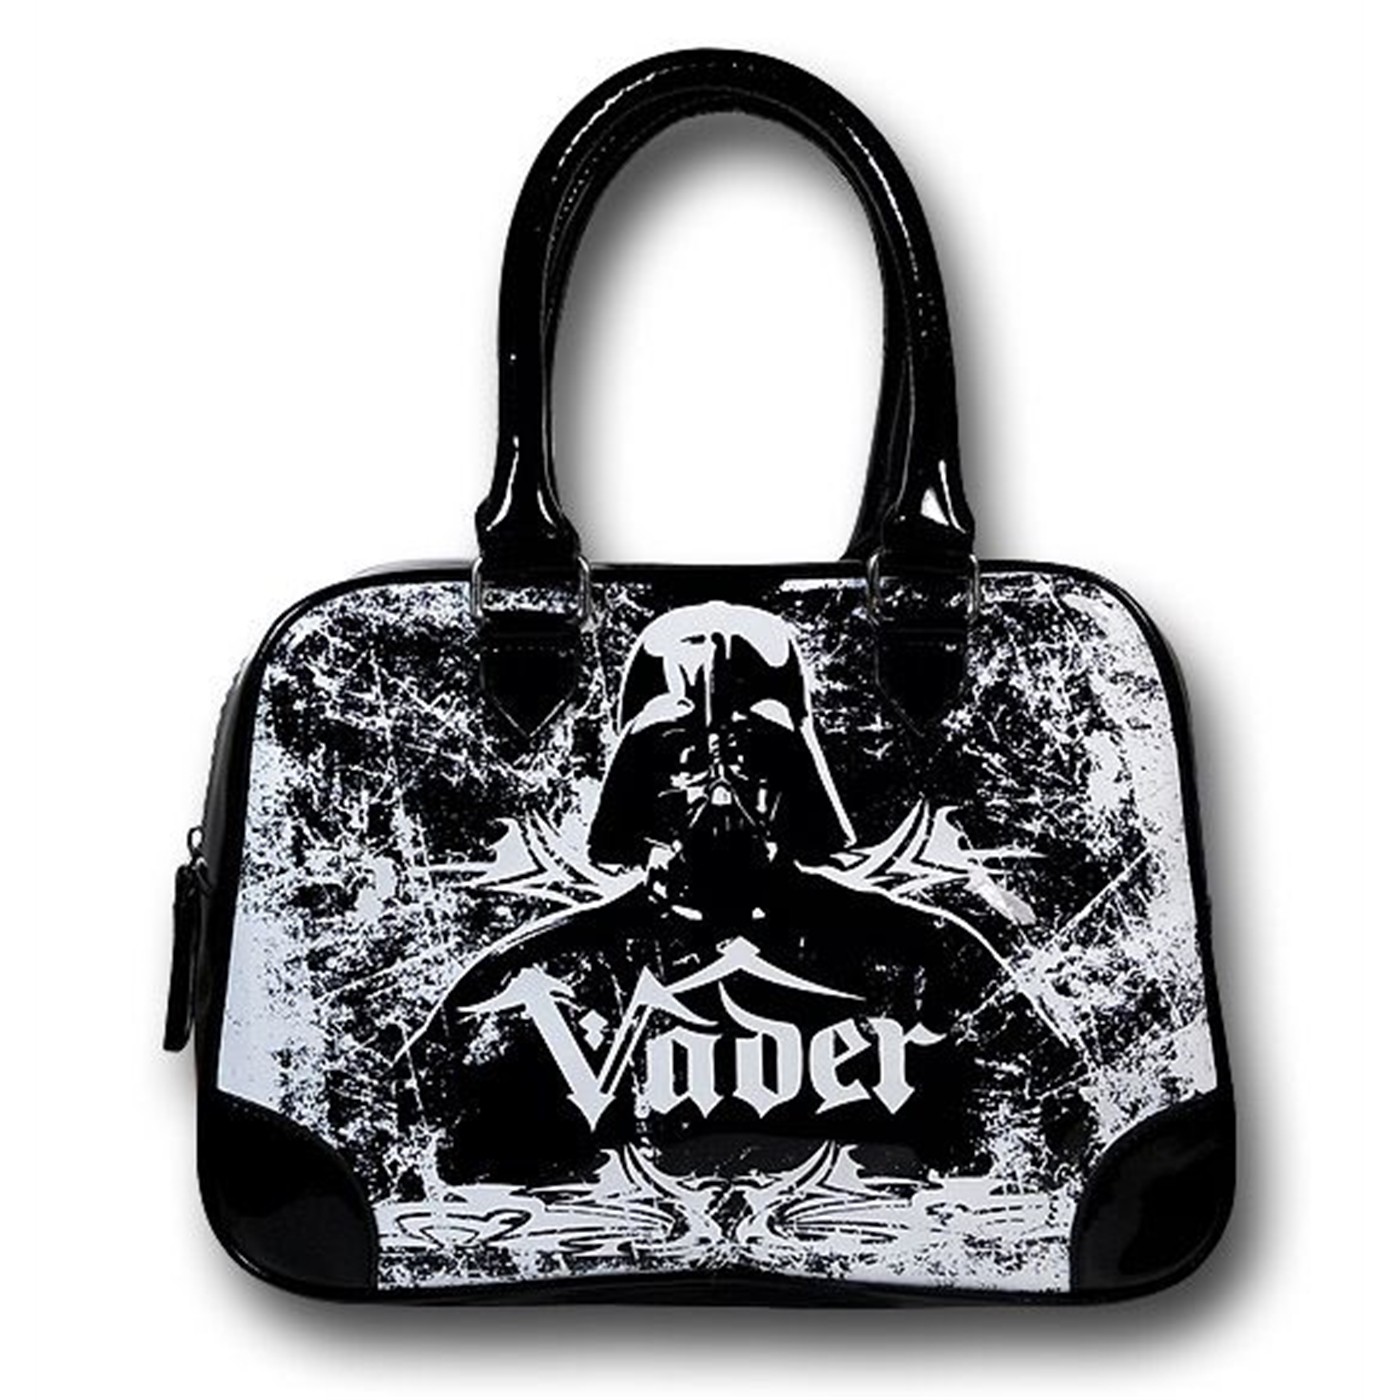 Star Wars Darth Vader Black Handbag